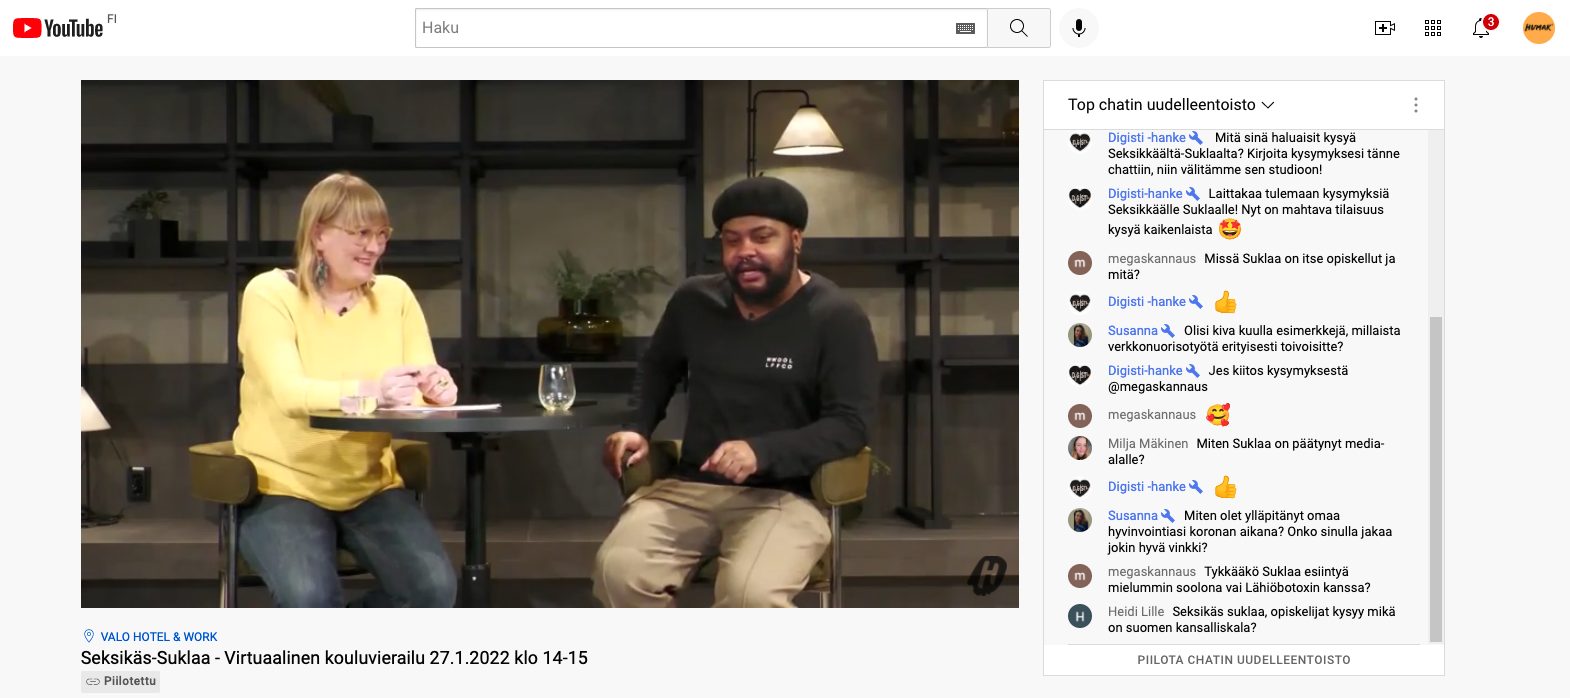 Näyttökuvakaappaus Youtuben livestriimistä, videossa kaksi henkilöä keskustelemassa ja vieressä chat-ikkuna.